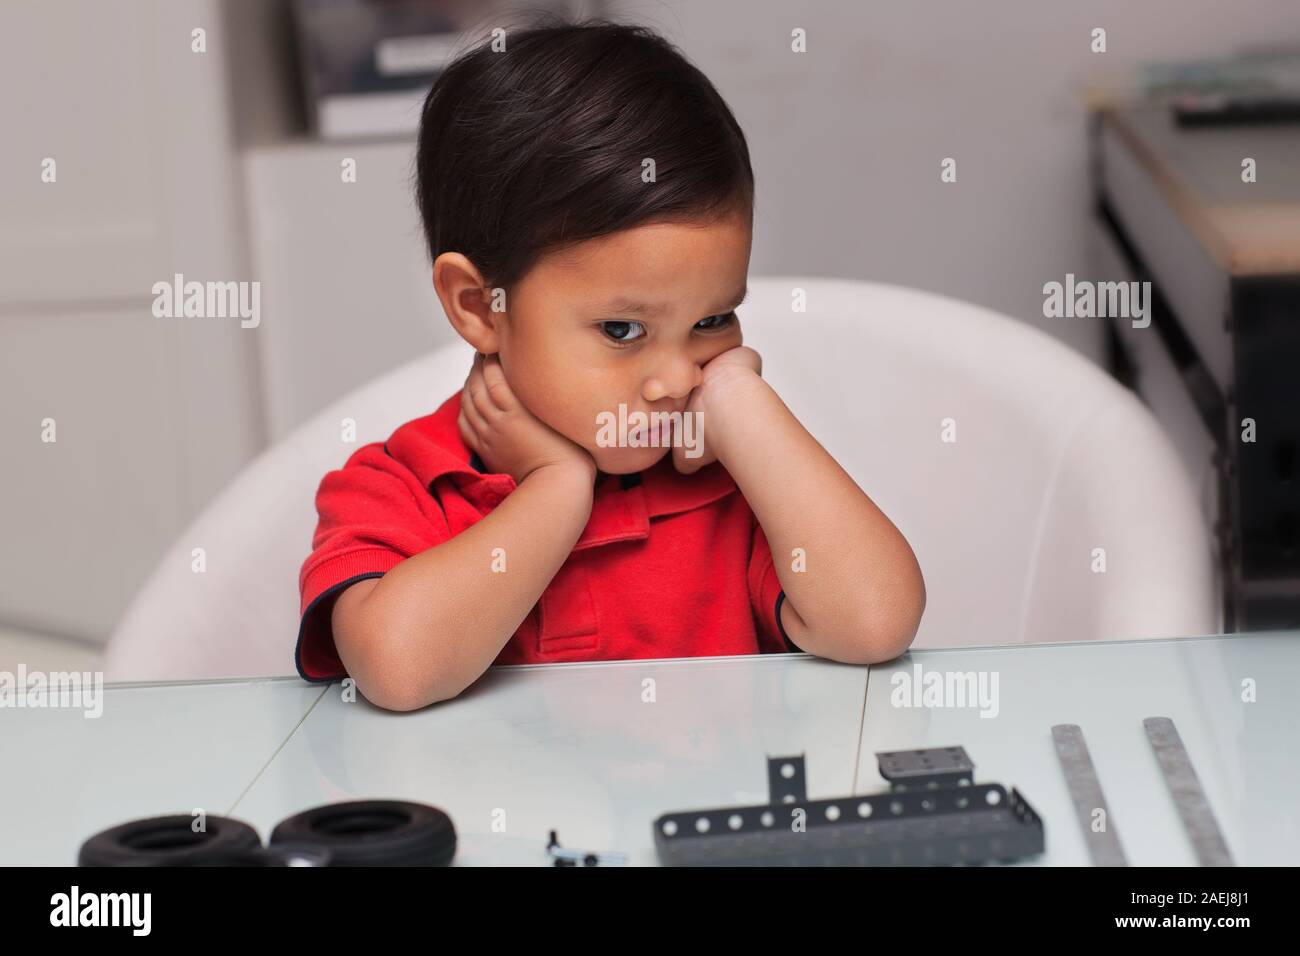 Ein Kleinkind auf der Suche verärgert oder frustriert, während versucht wurde, eine schwierige Spielzeug, das in Stücken ist zu montieren zu können. Stockfoto